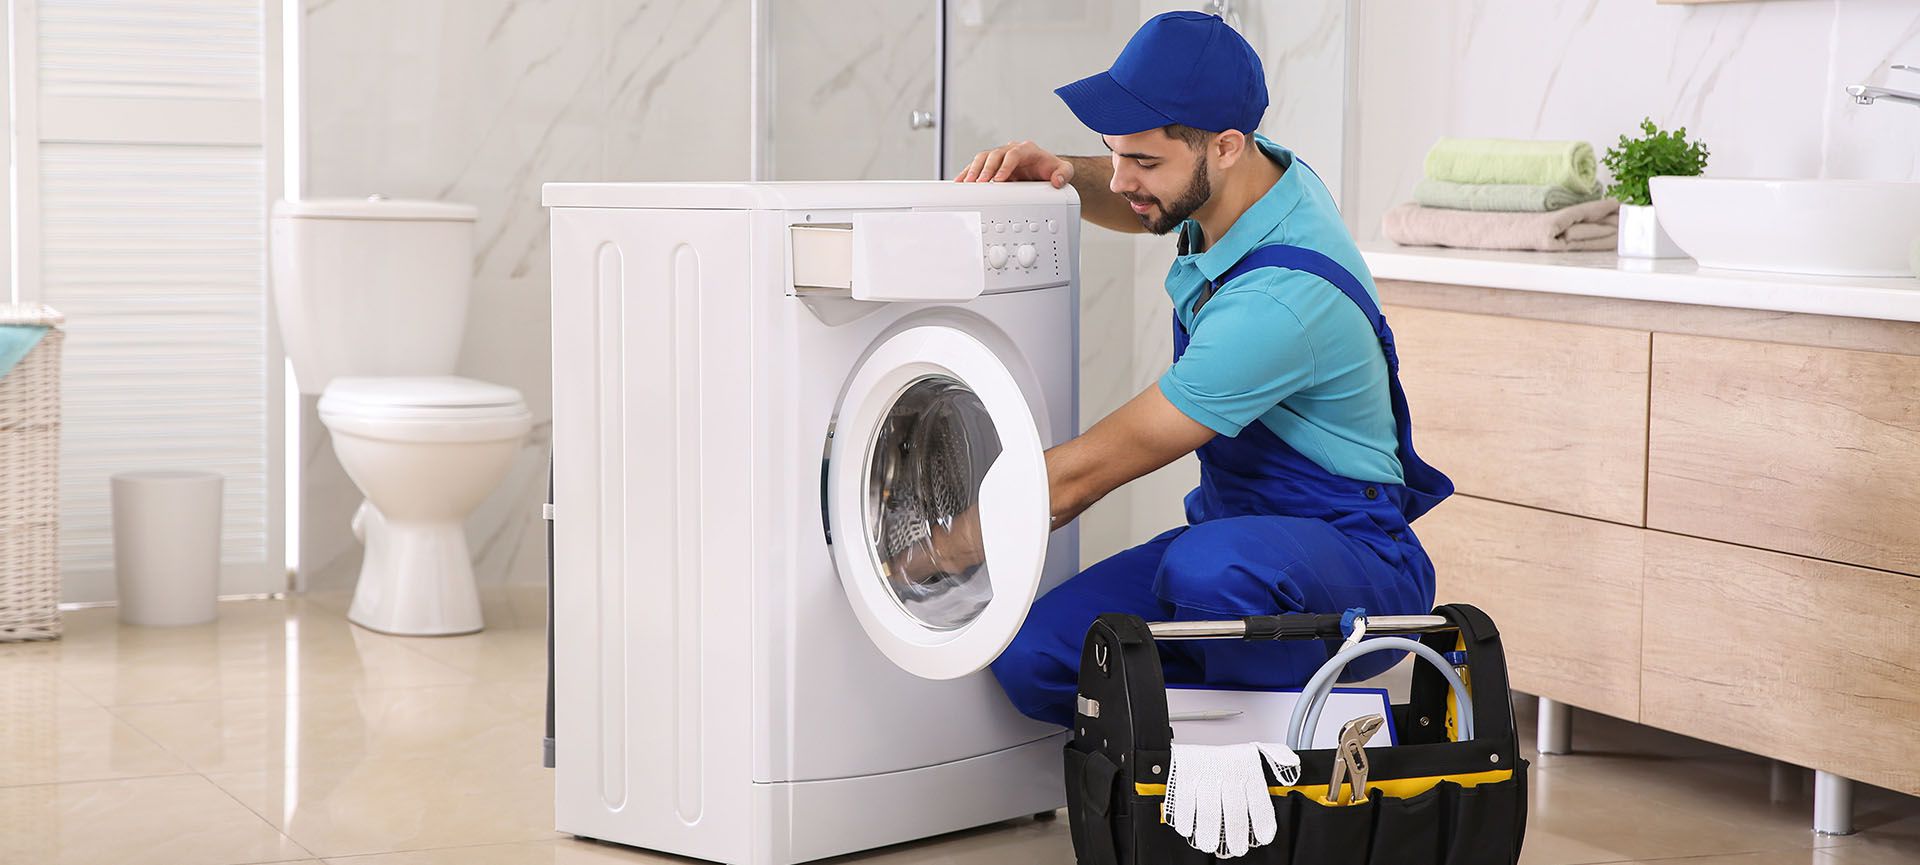 دلایل تخلیه نشدن آب ماشین لباسشویی